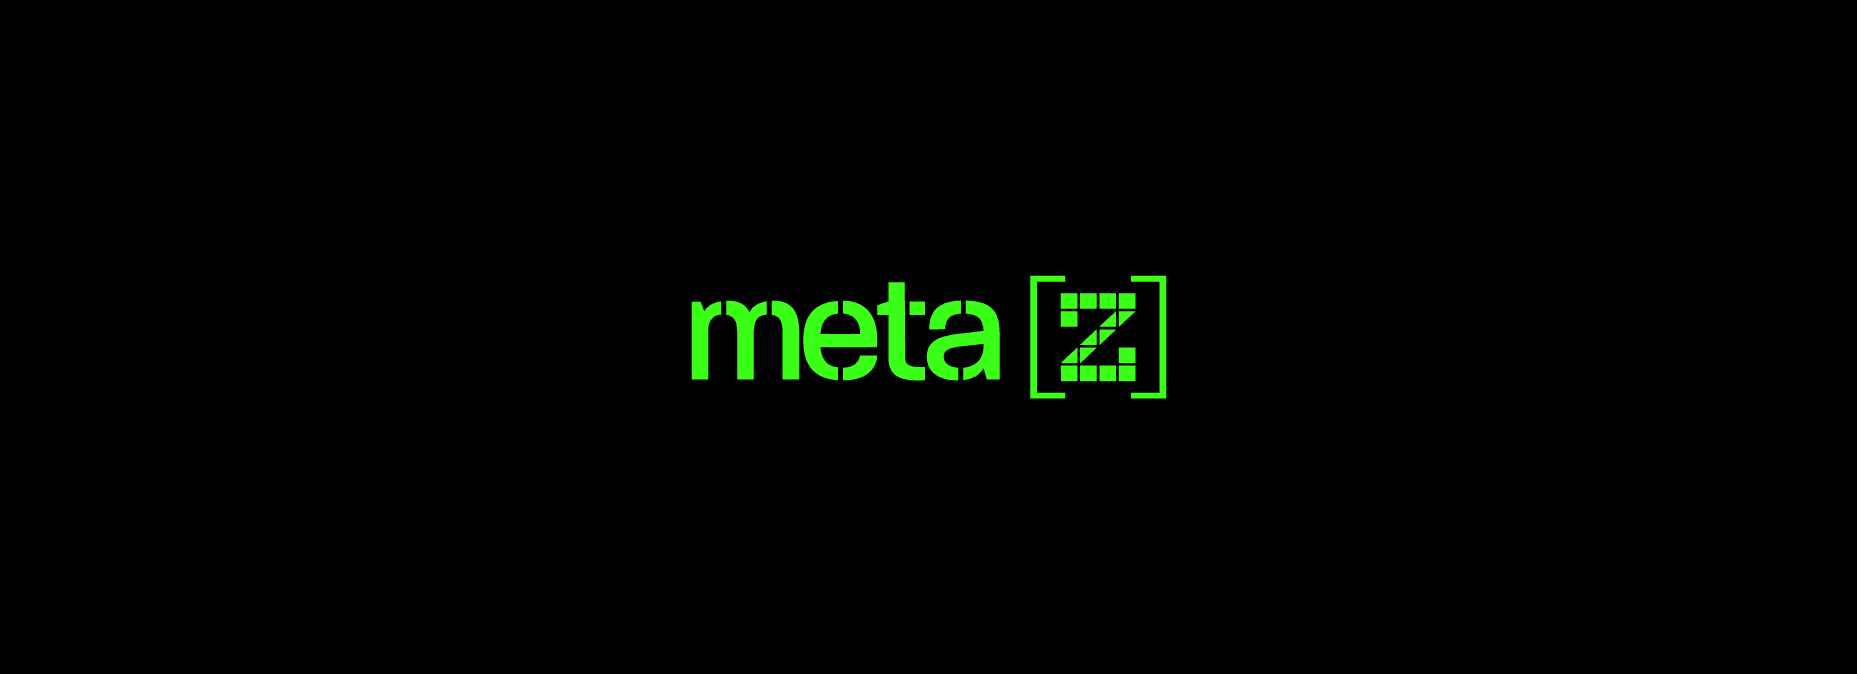 metaZ banner